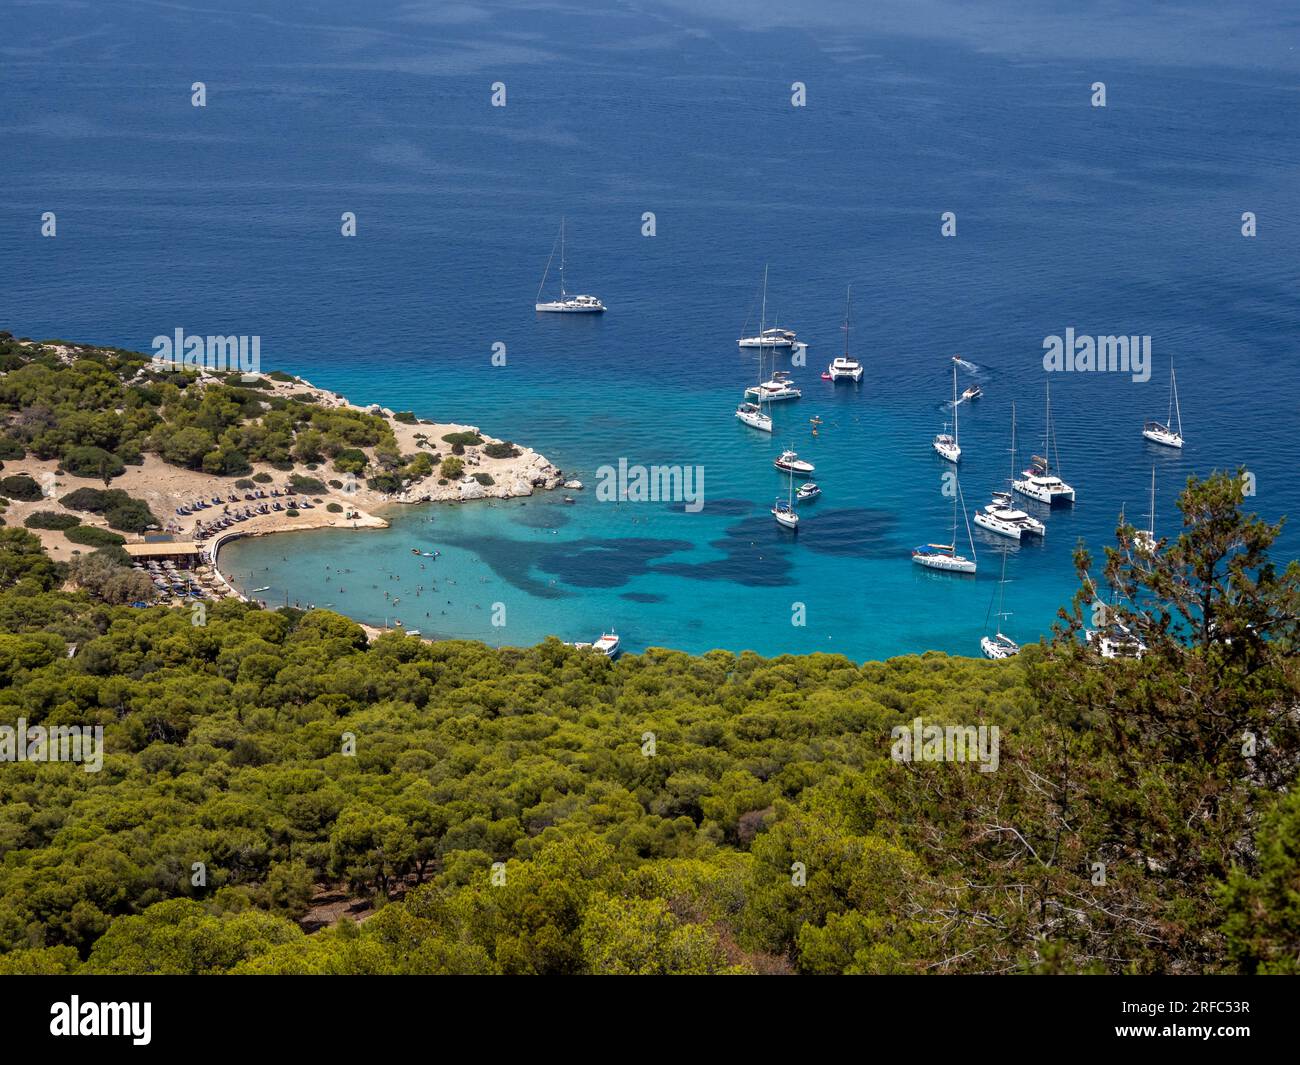 Vue aérienne d'une île avec de l'eau turquoise propre. Une baie naturelle avec des yachts de luxe et des voiliers. Banque D'Images